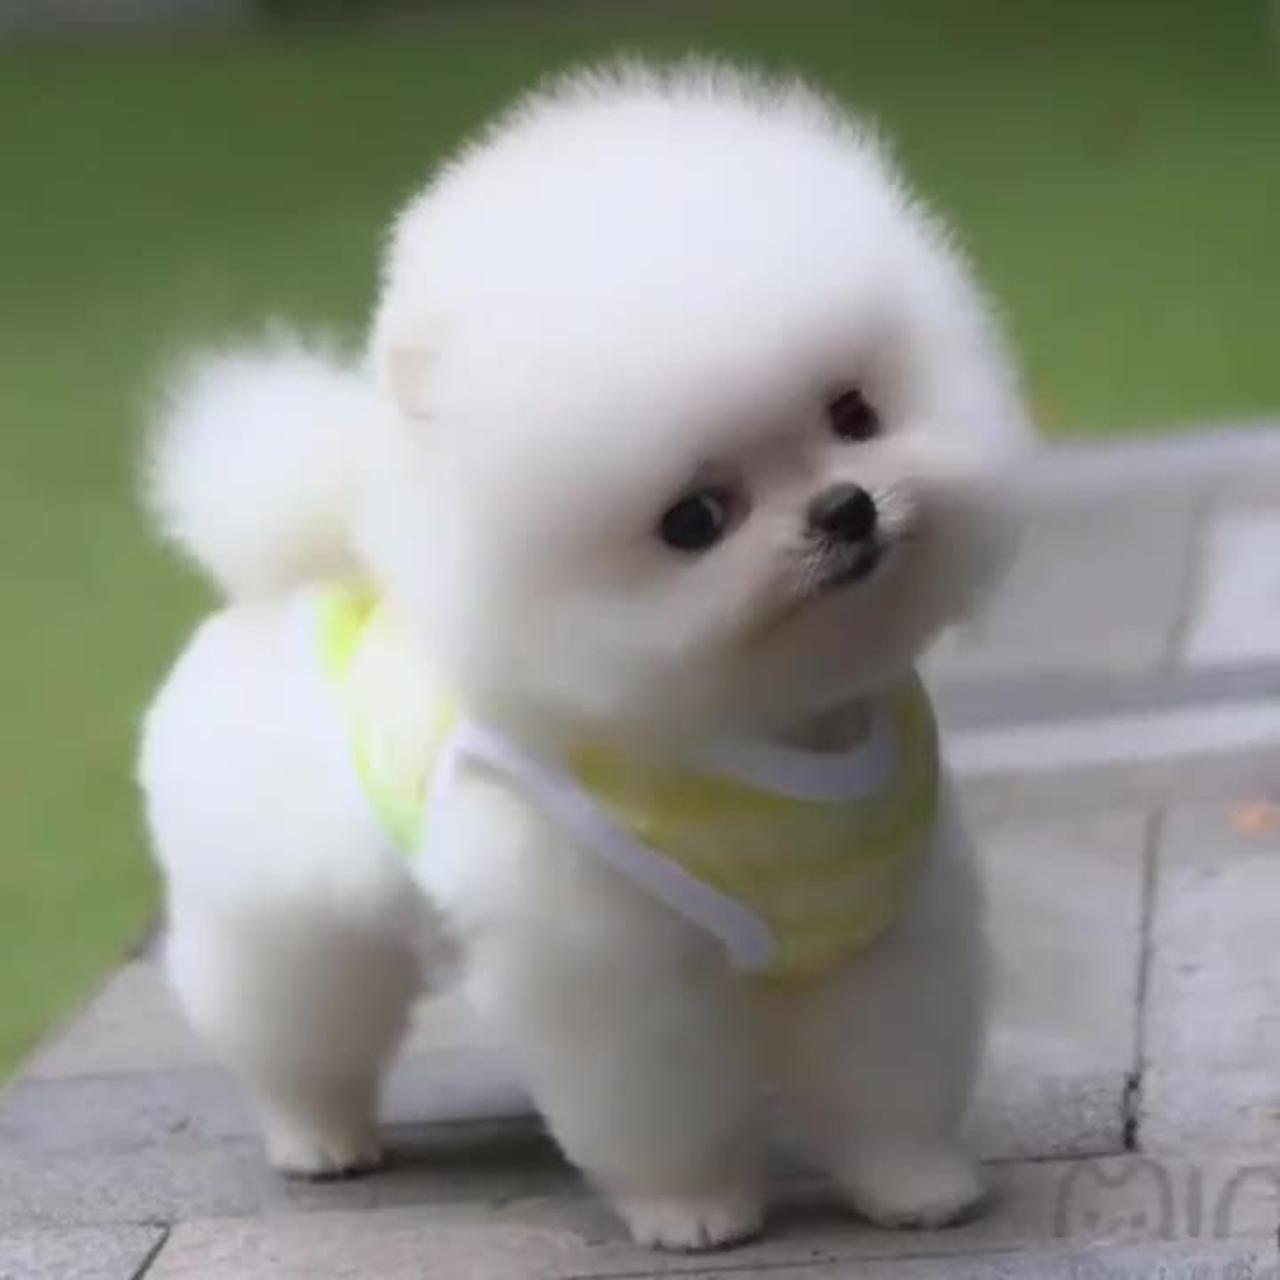 Cute baby 🐕 dog #shorts #rumbleviral